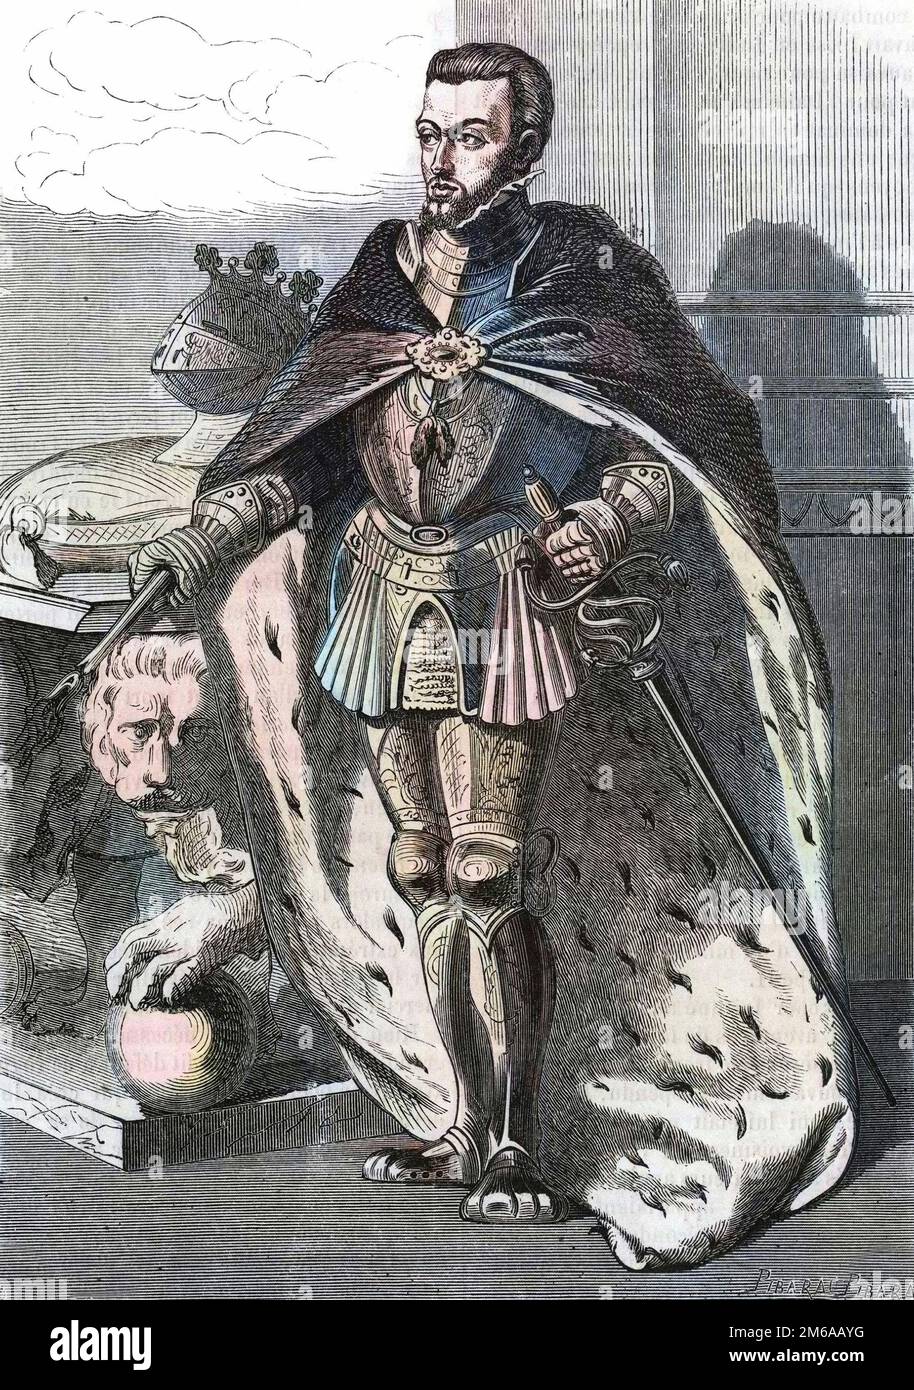 Philippe II (1527-1598), roi d'Espagne. In 'Histoire Populaire de la France', vers 1885. Gravure. Stock Photo